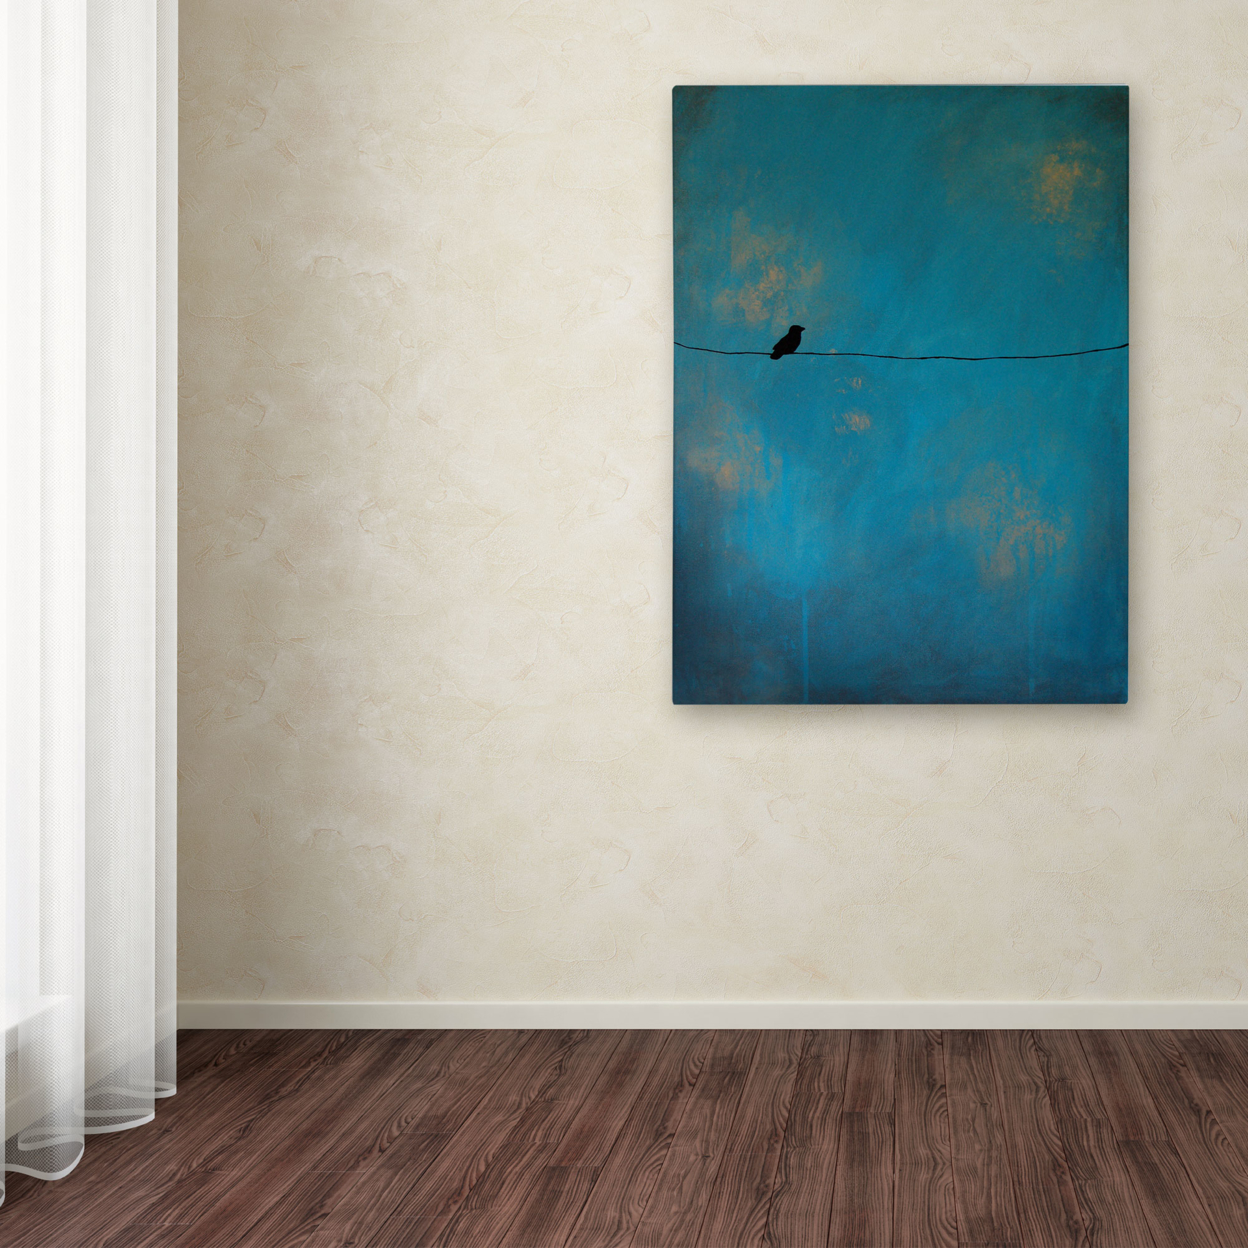 Nicole Dietz 'Lone Bird Blue' Canvas Wall Art 35 X 47 Inches